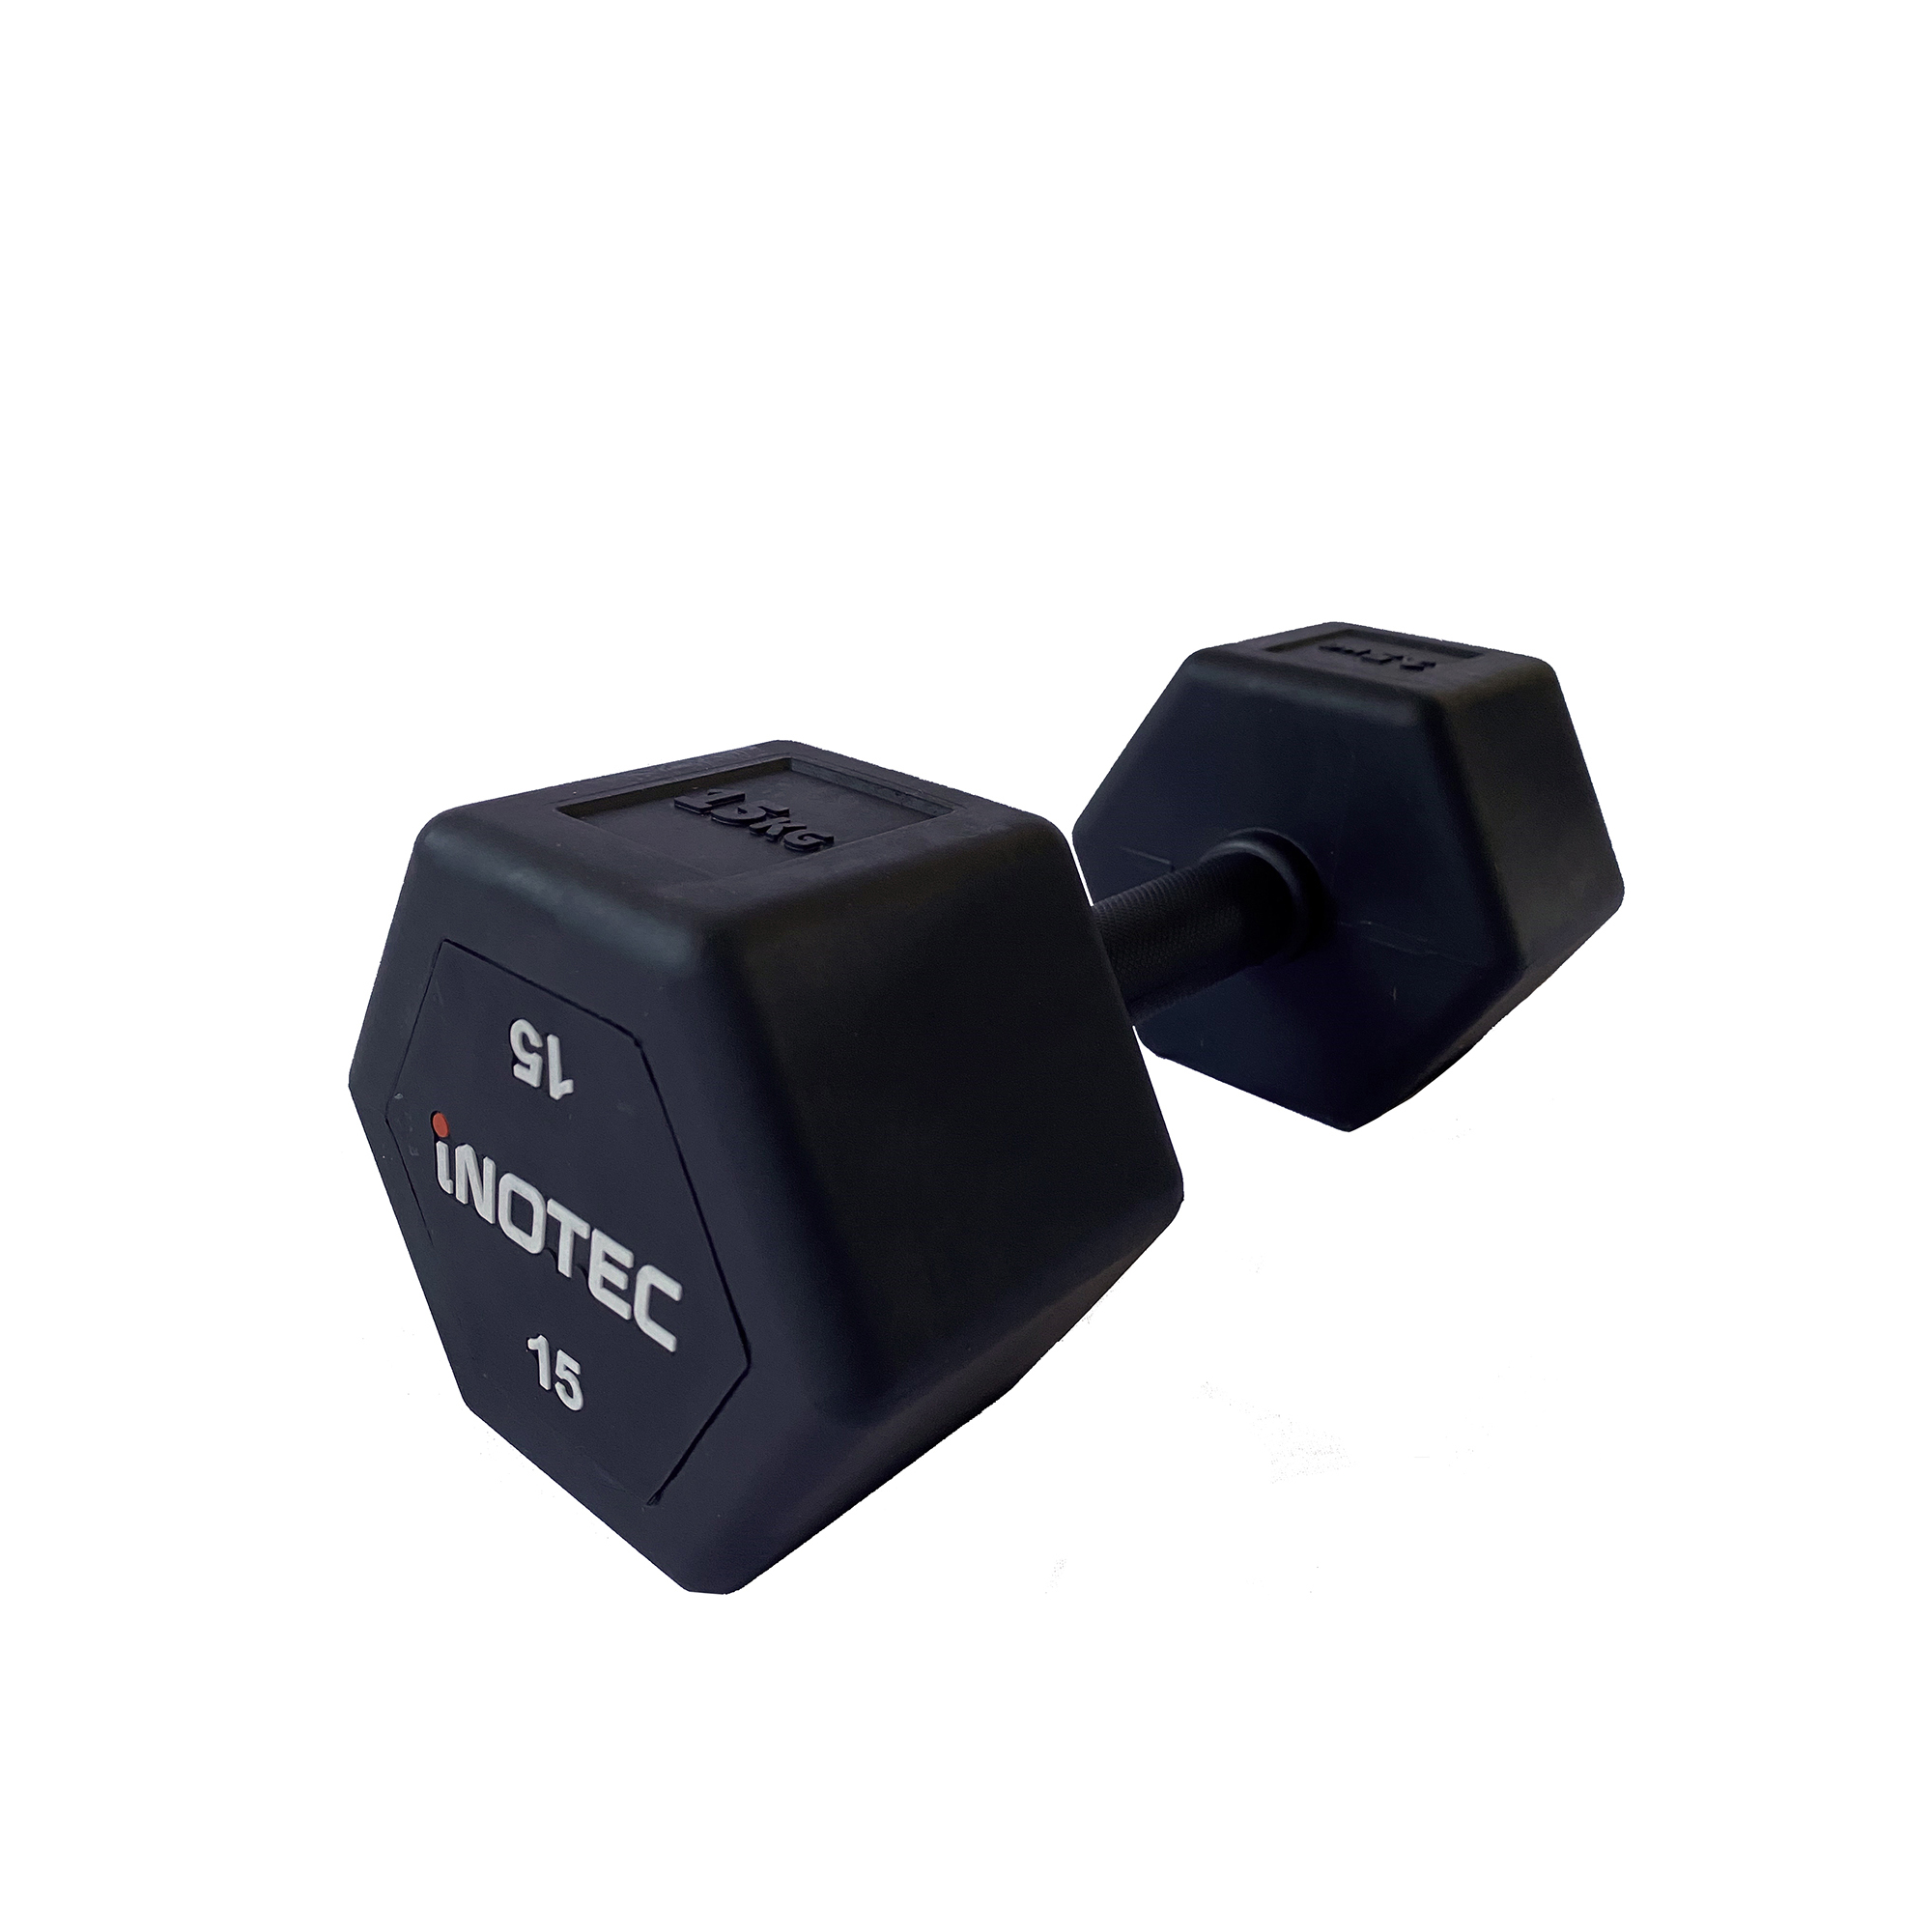 Inotec Hexagon Håndvægt 15 kg